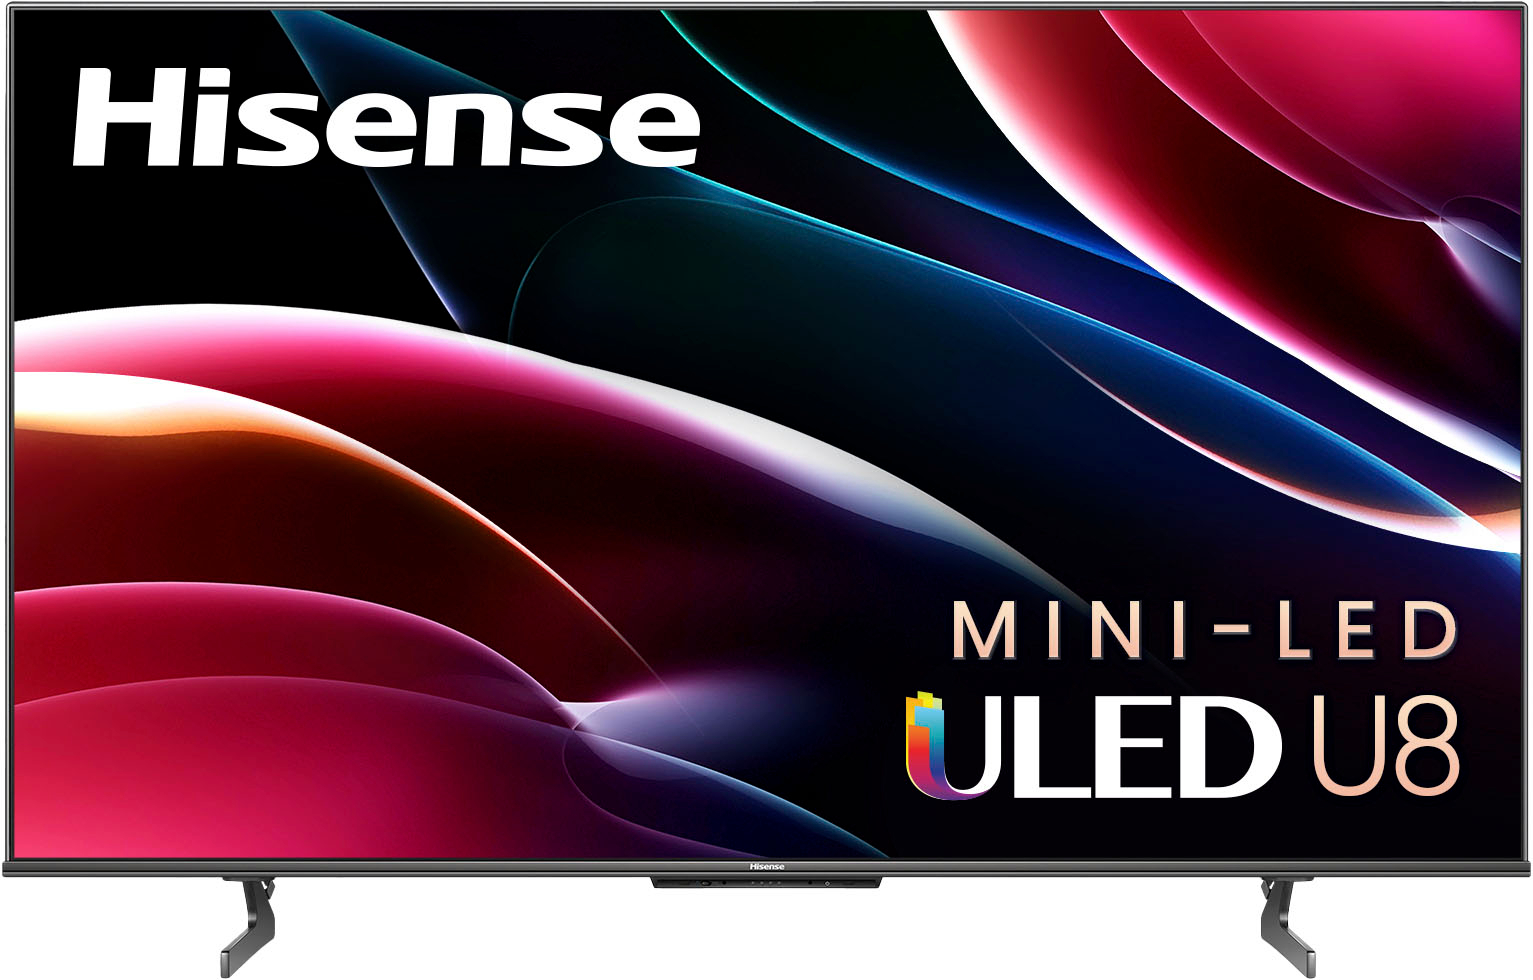 Hisense 65" Class U8H Series Mini LED Quantum ULED UHD Smart Google TV 65U8H - Best Buy